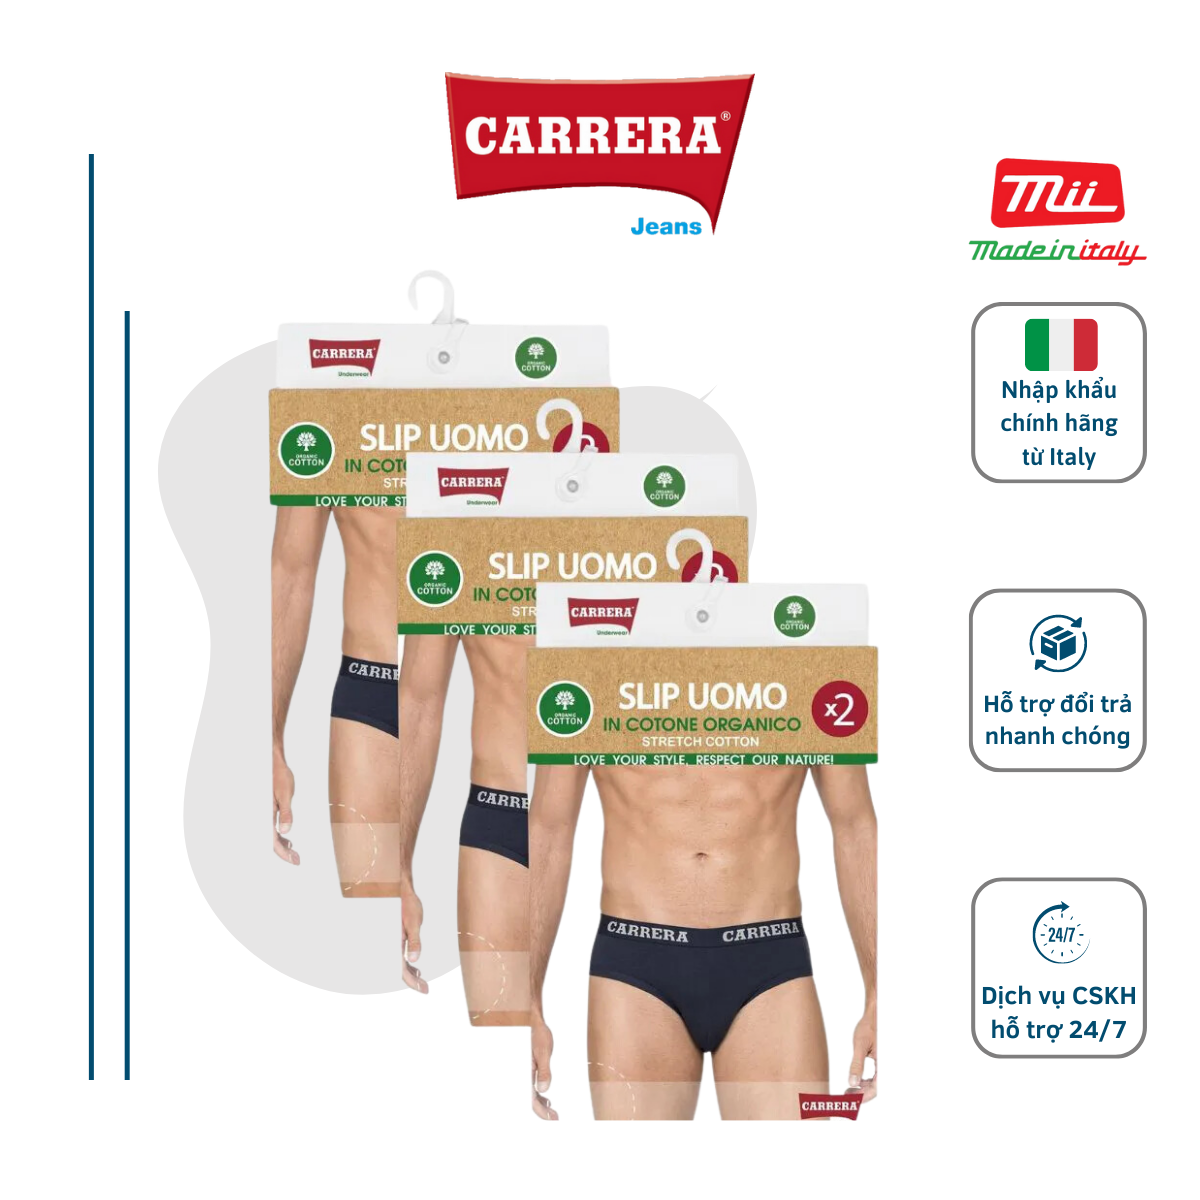 Carrera men s 2 PCs genuine cotton solid color jeans triangle underwear